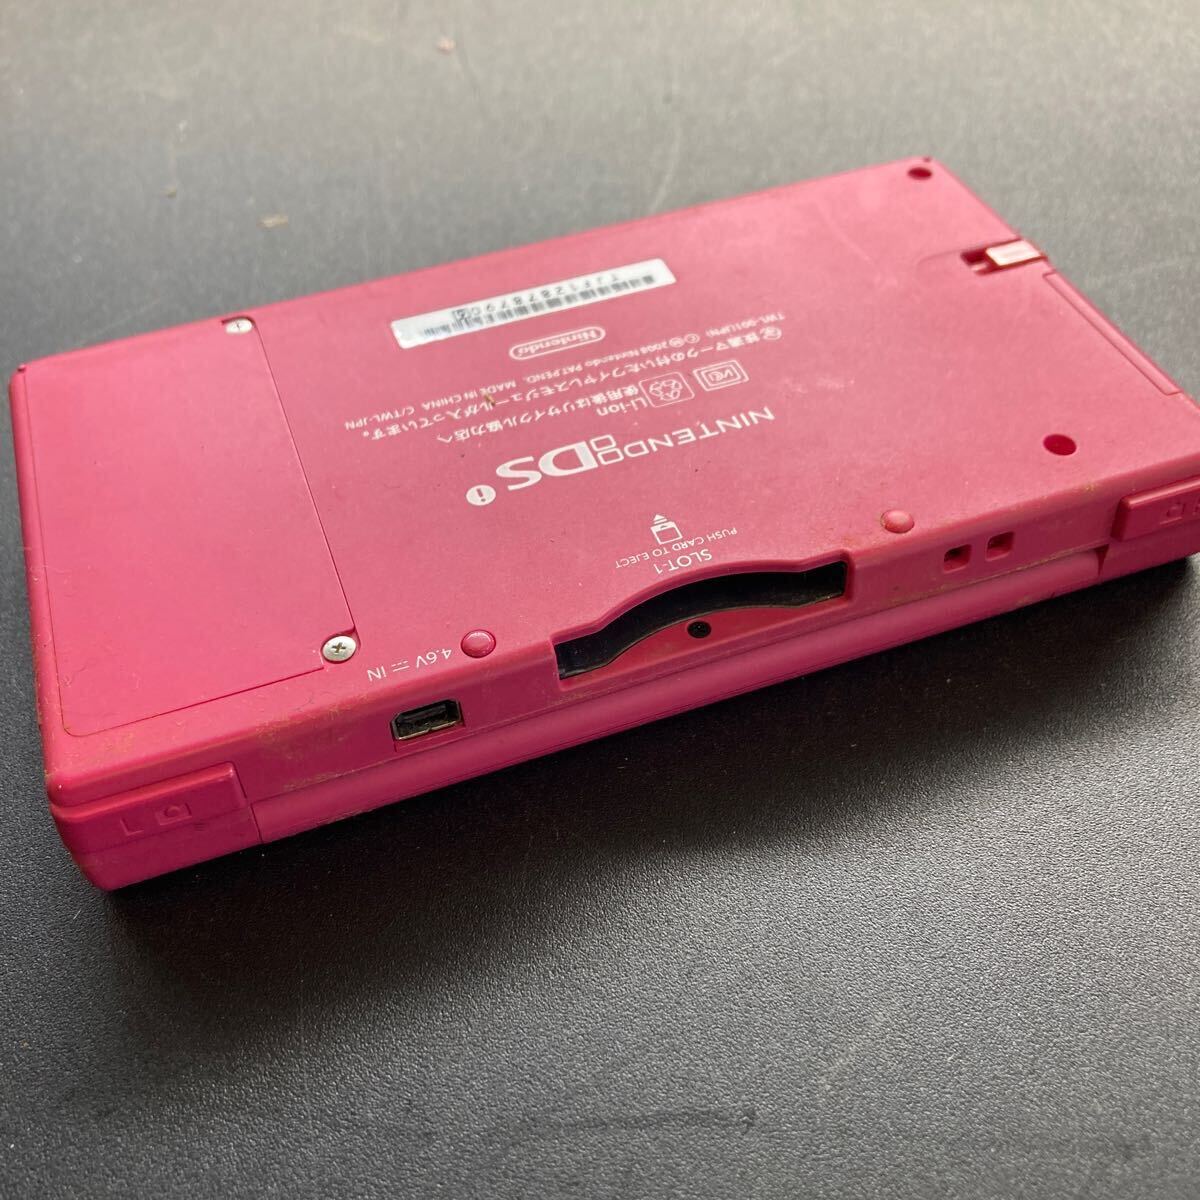 Nintendo Nintendo nintendo DSi TWL-001 Nintendo DSi DS i розовый корпус только игра машина текущее состояние товар 